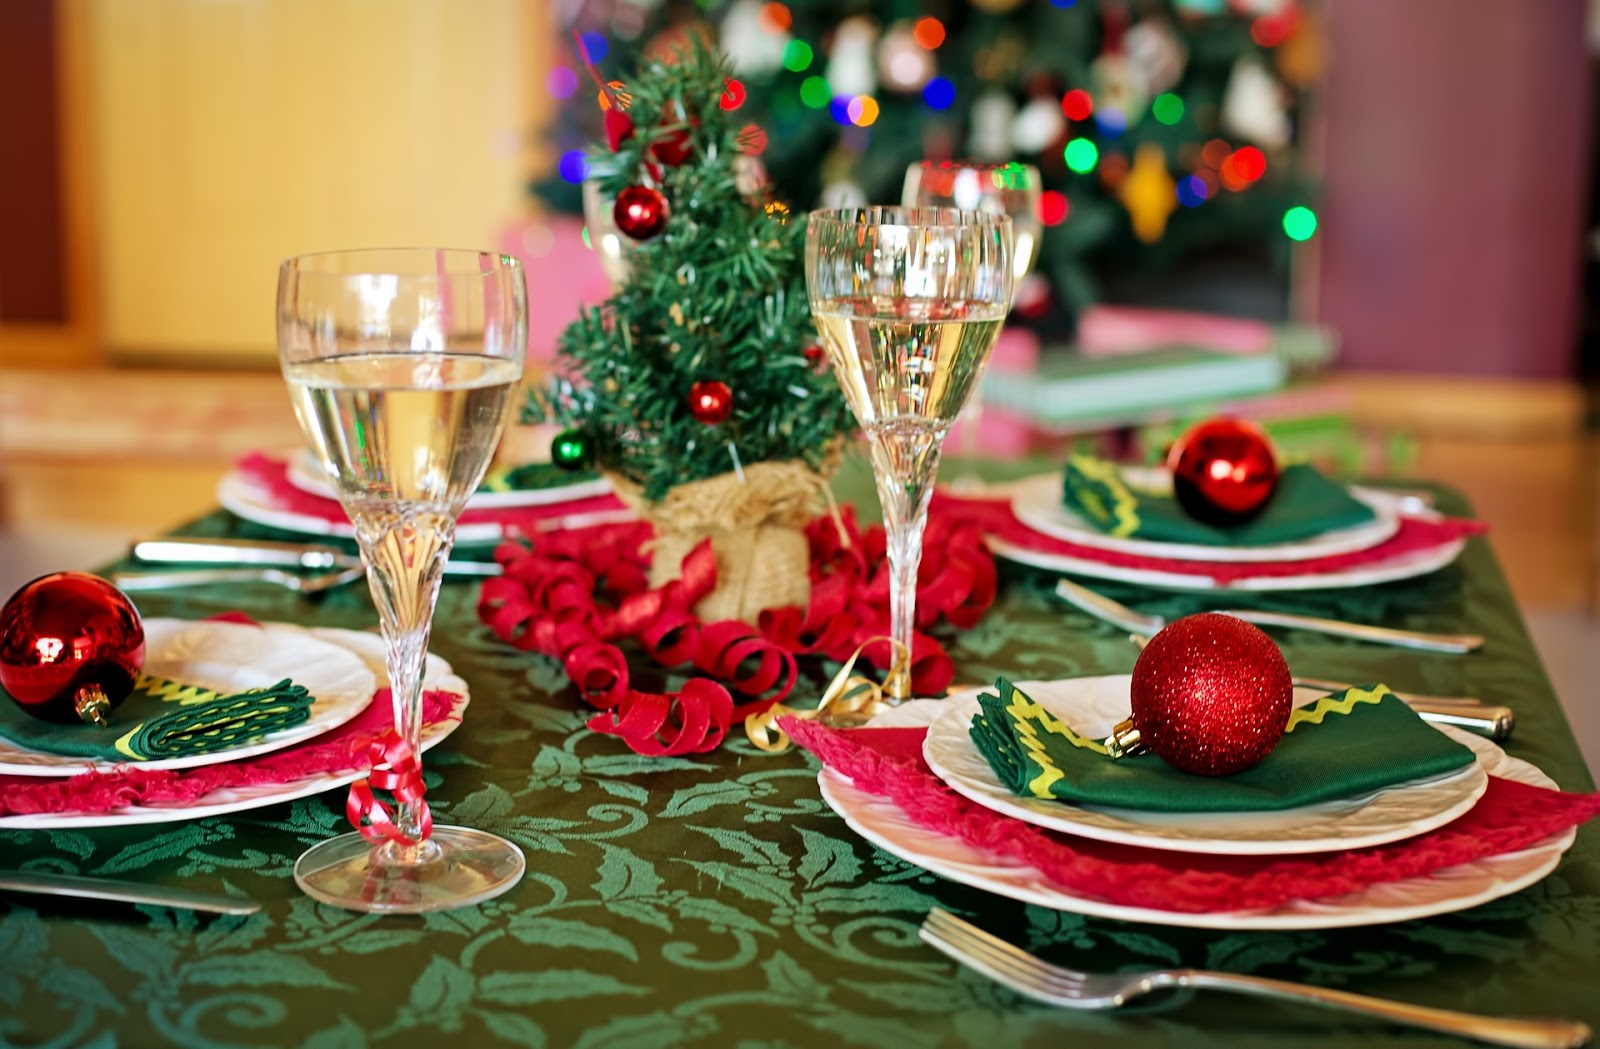 Especial de festas | Sugestão de menu para ceia de Natal e Ano Novo - GRÃO  COM BICO